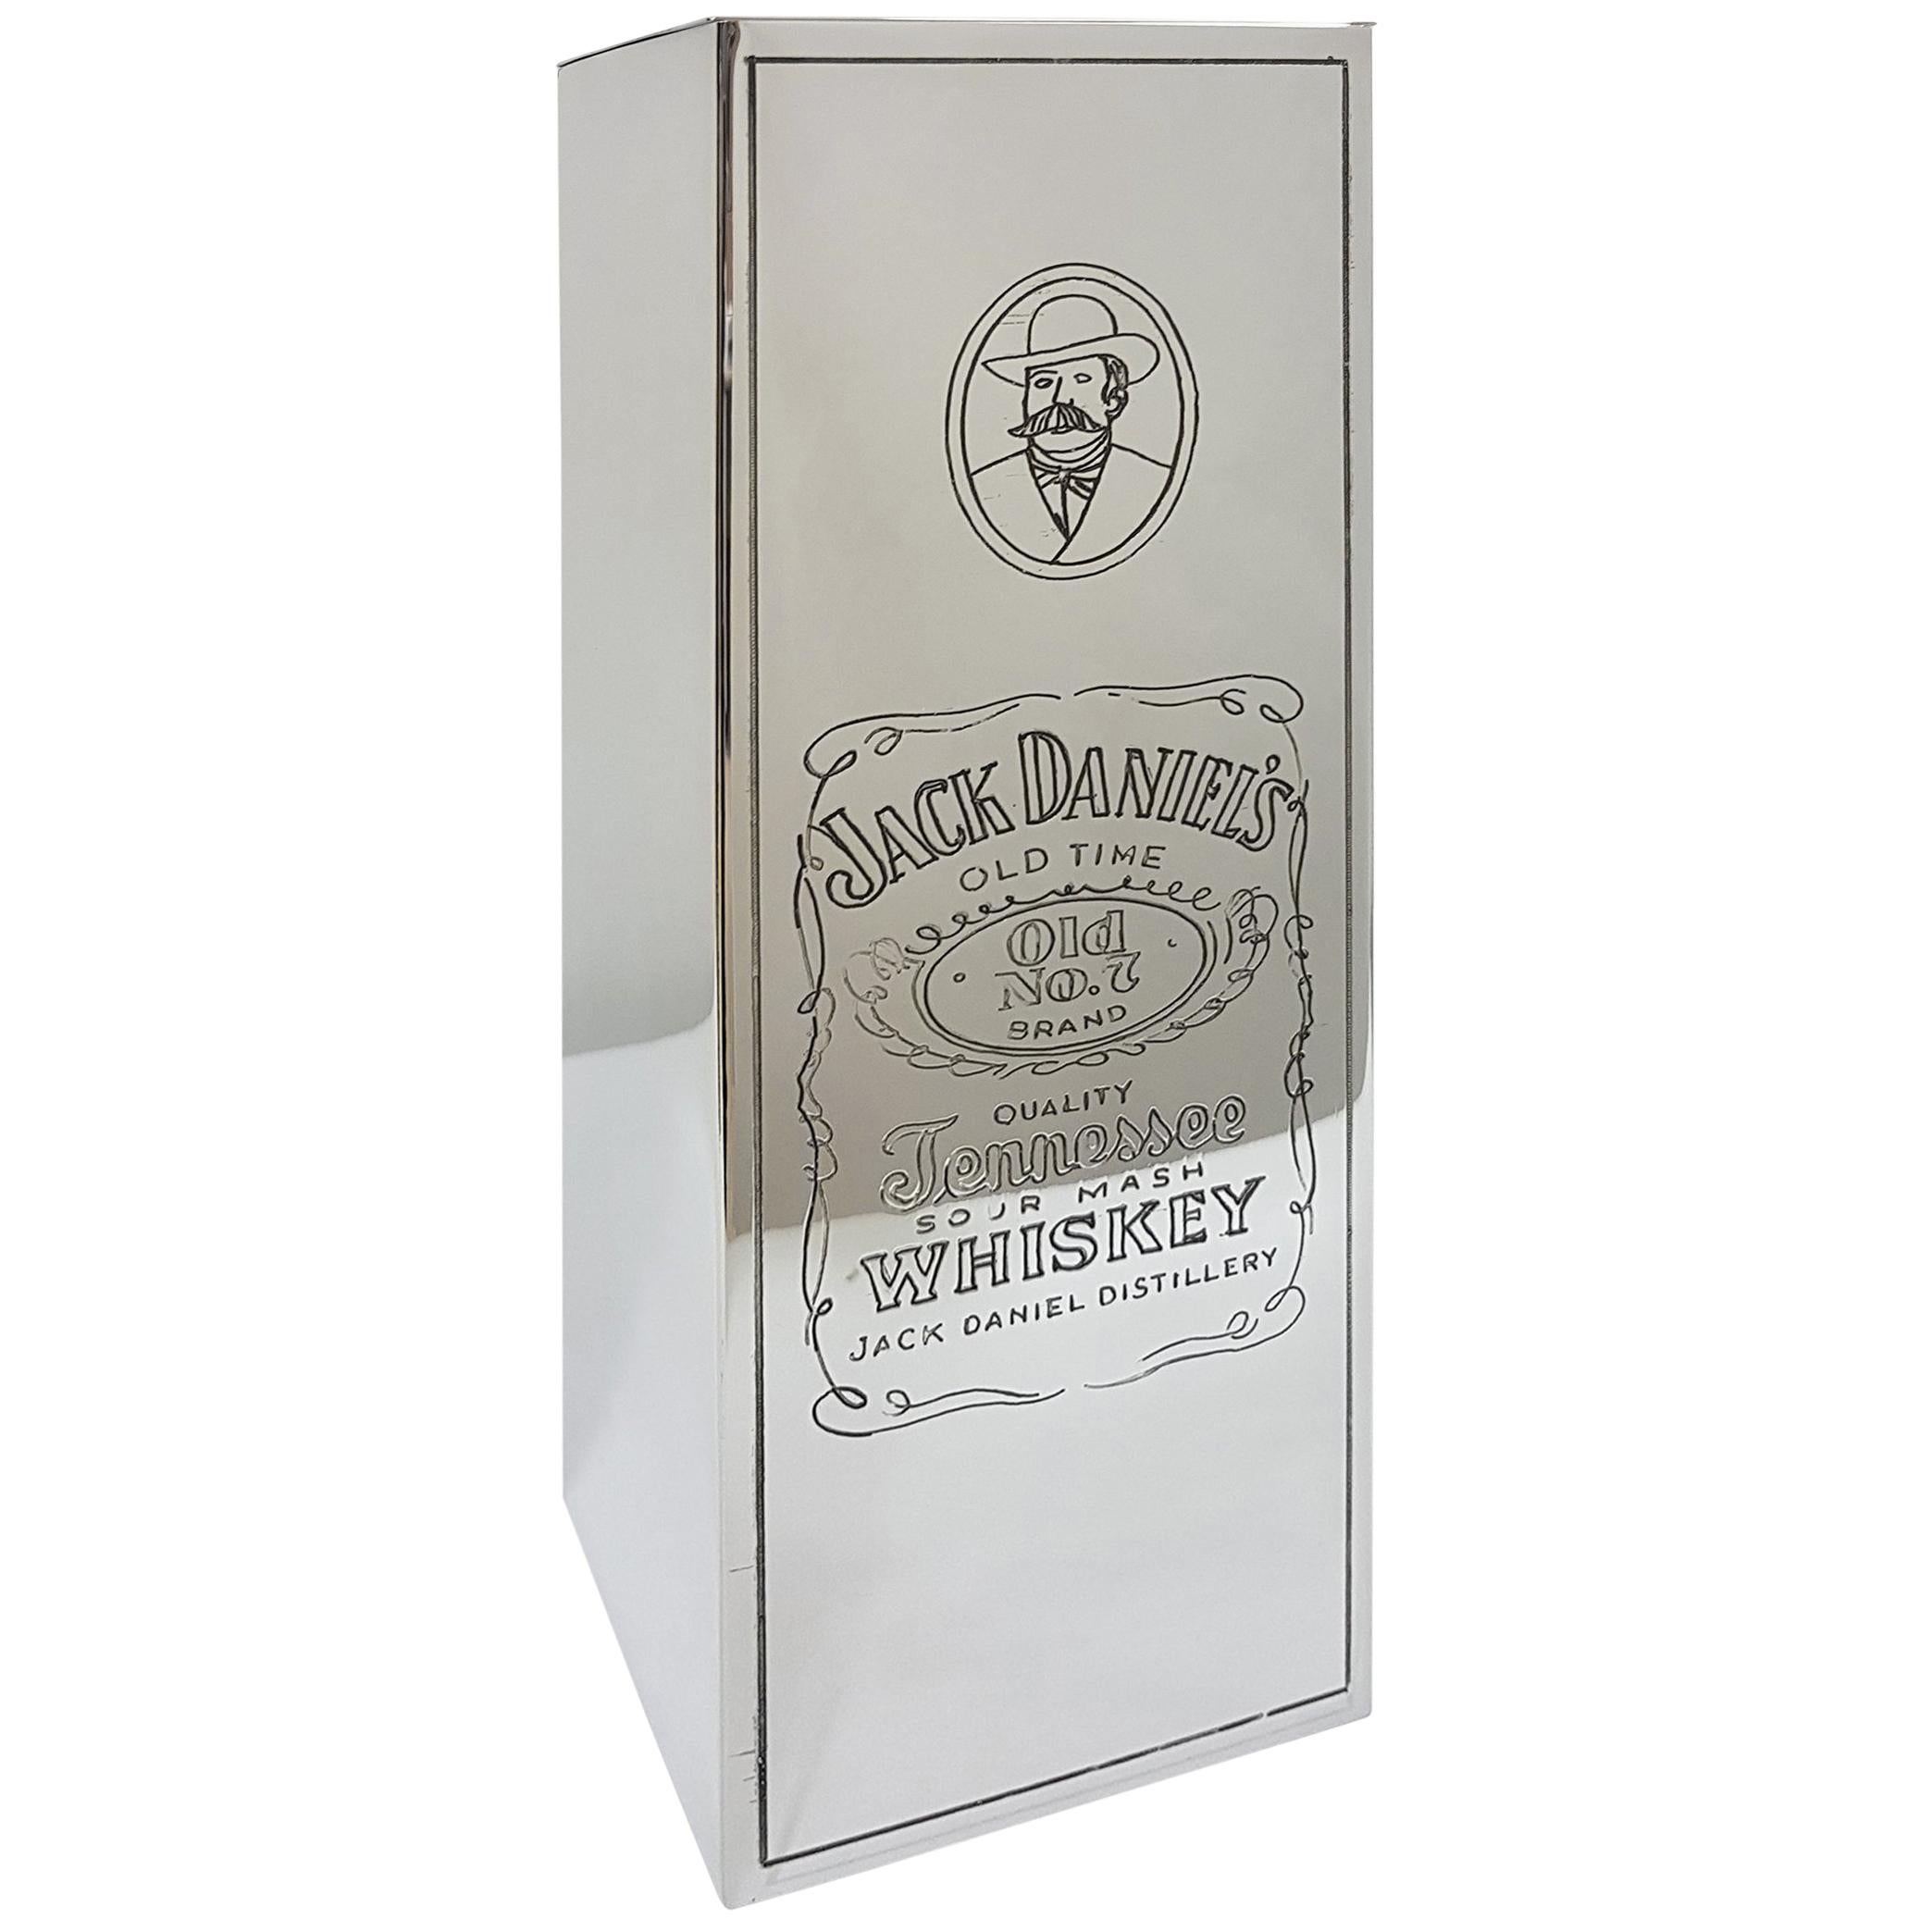 20th Century Italian Silver Engraved Whisky Bottle Holder "Jack Daniel's" For Sale